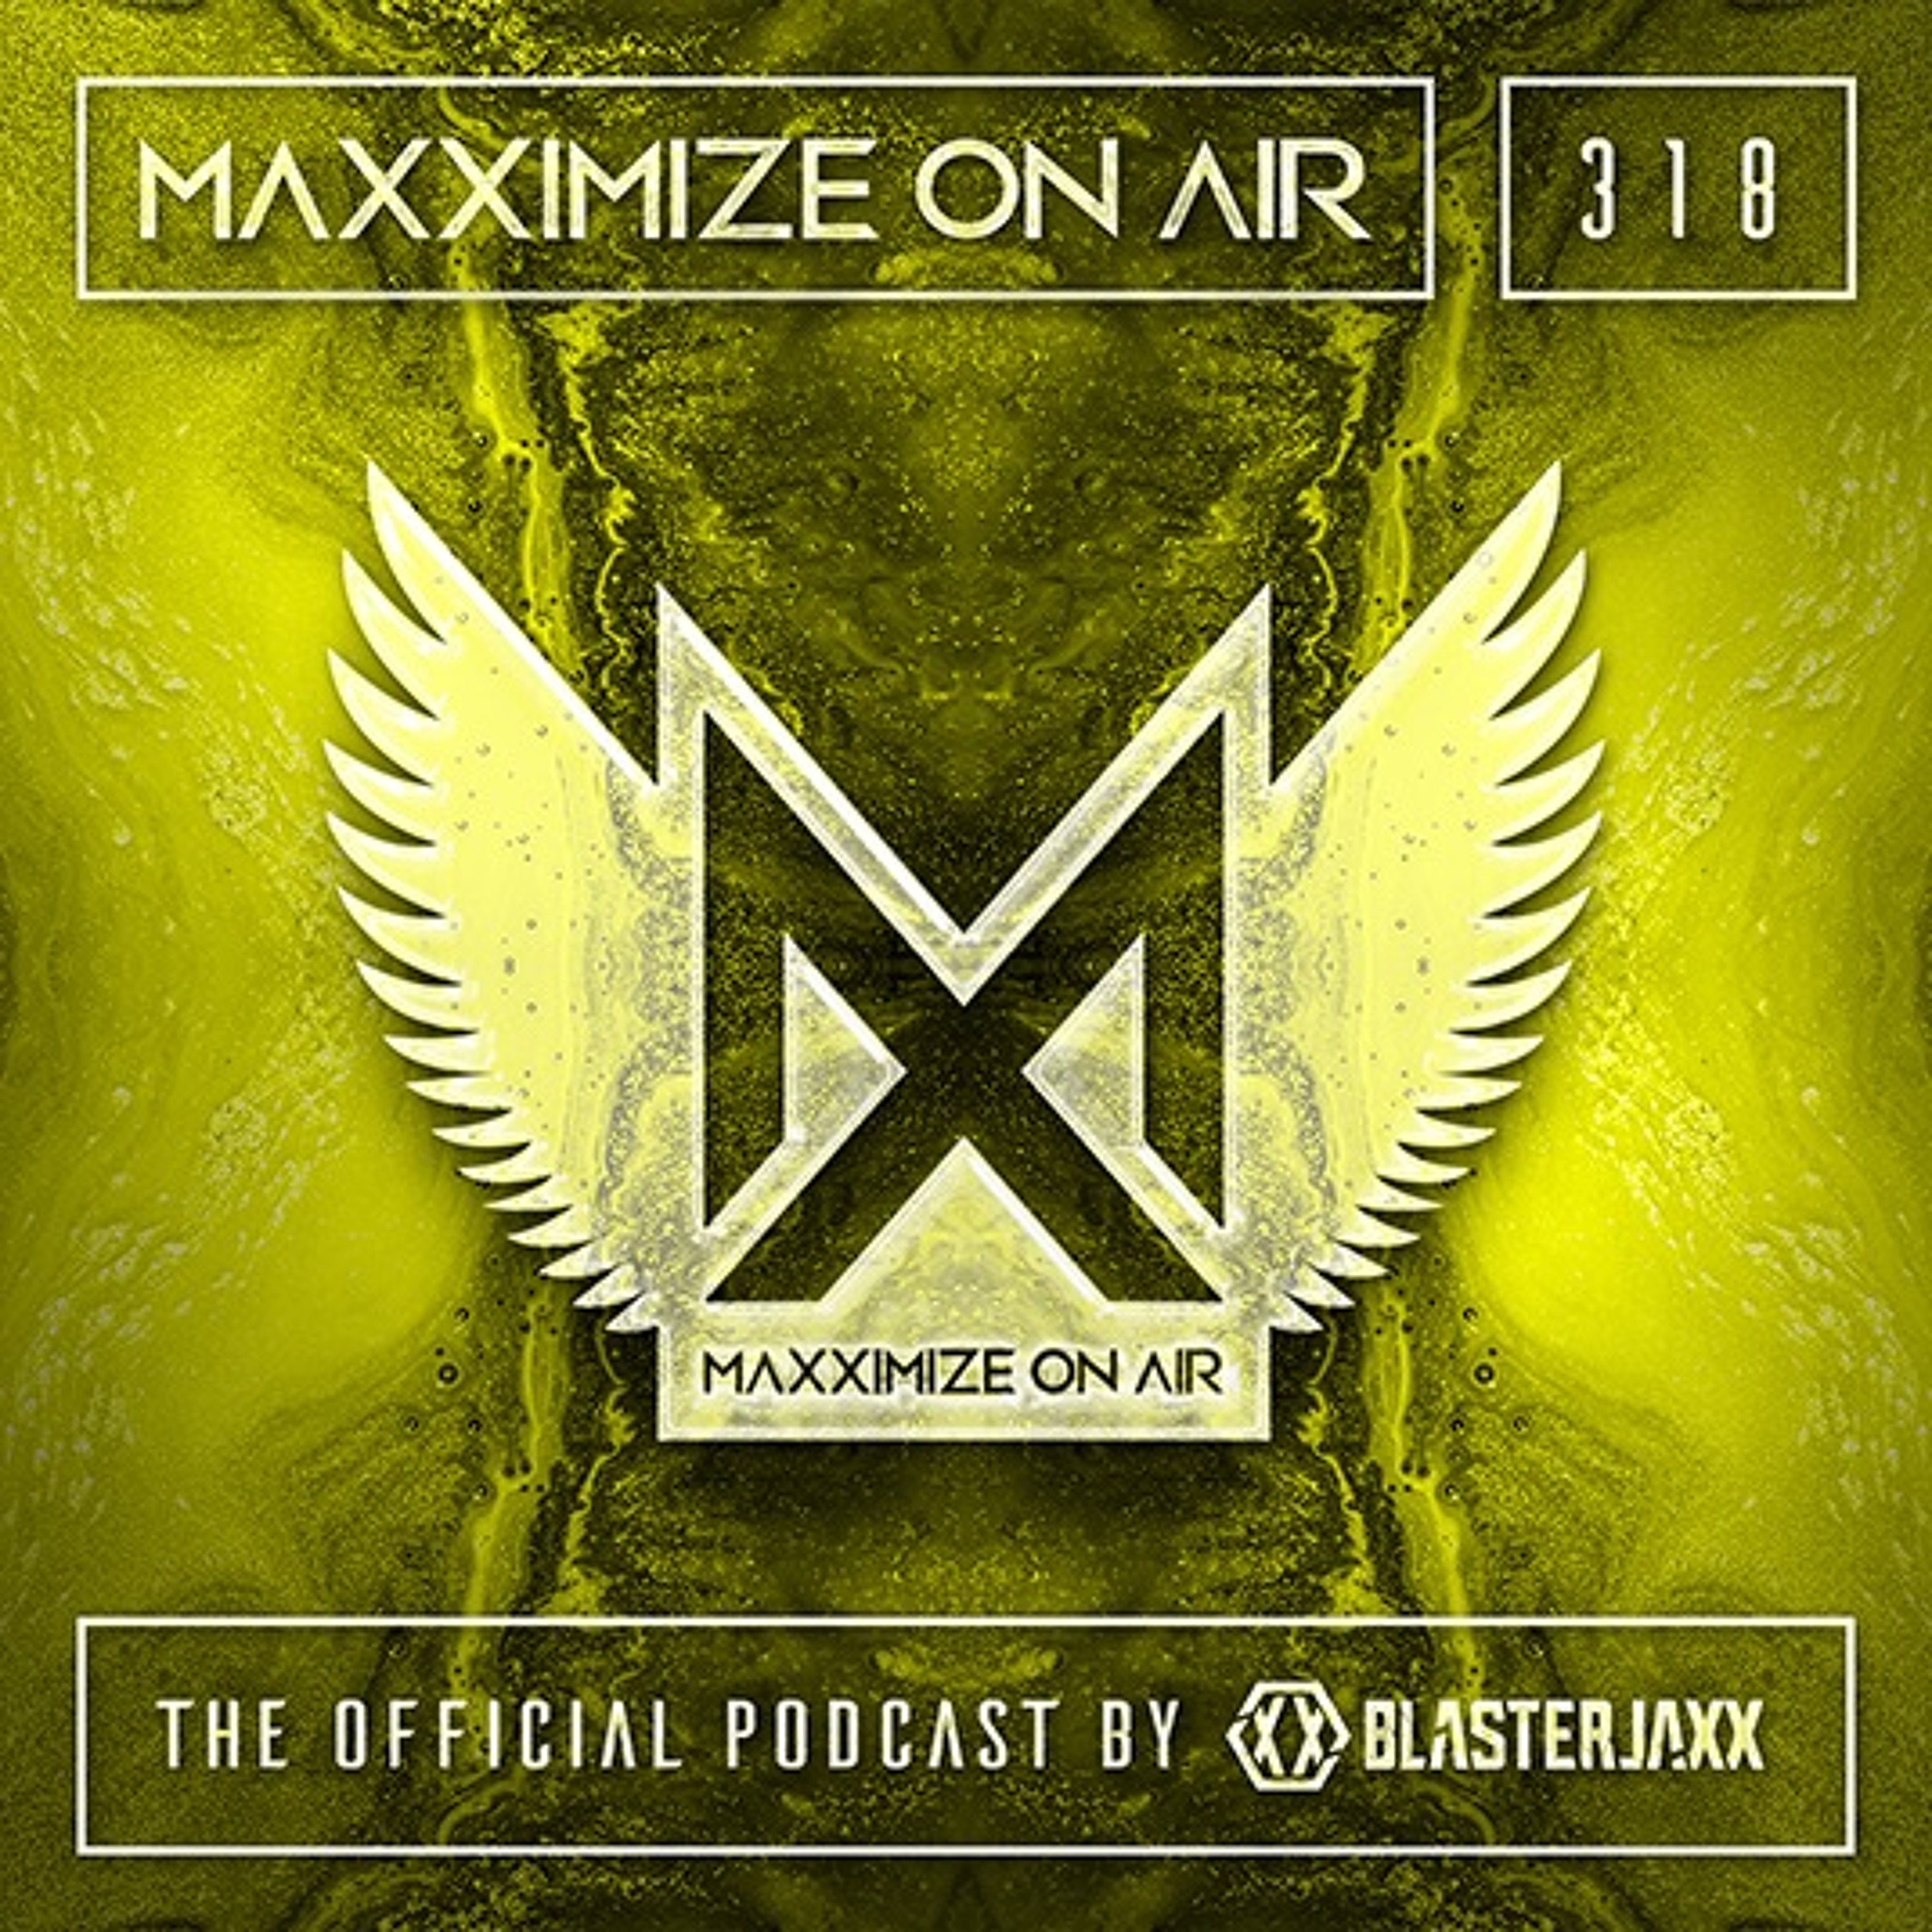 Blasterjaxx present Maxximize On Air #318